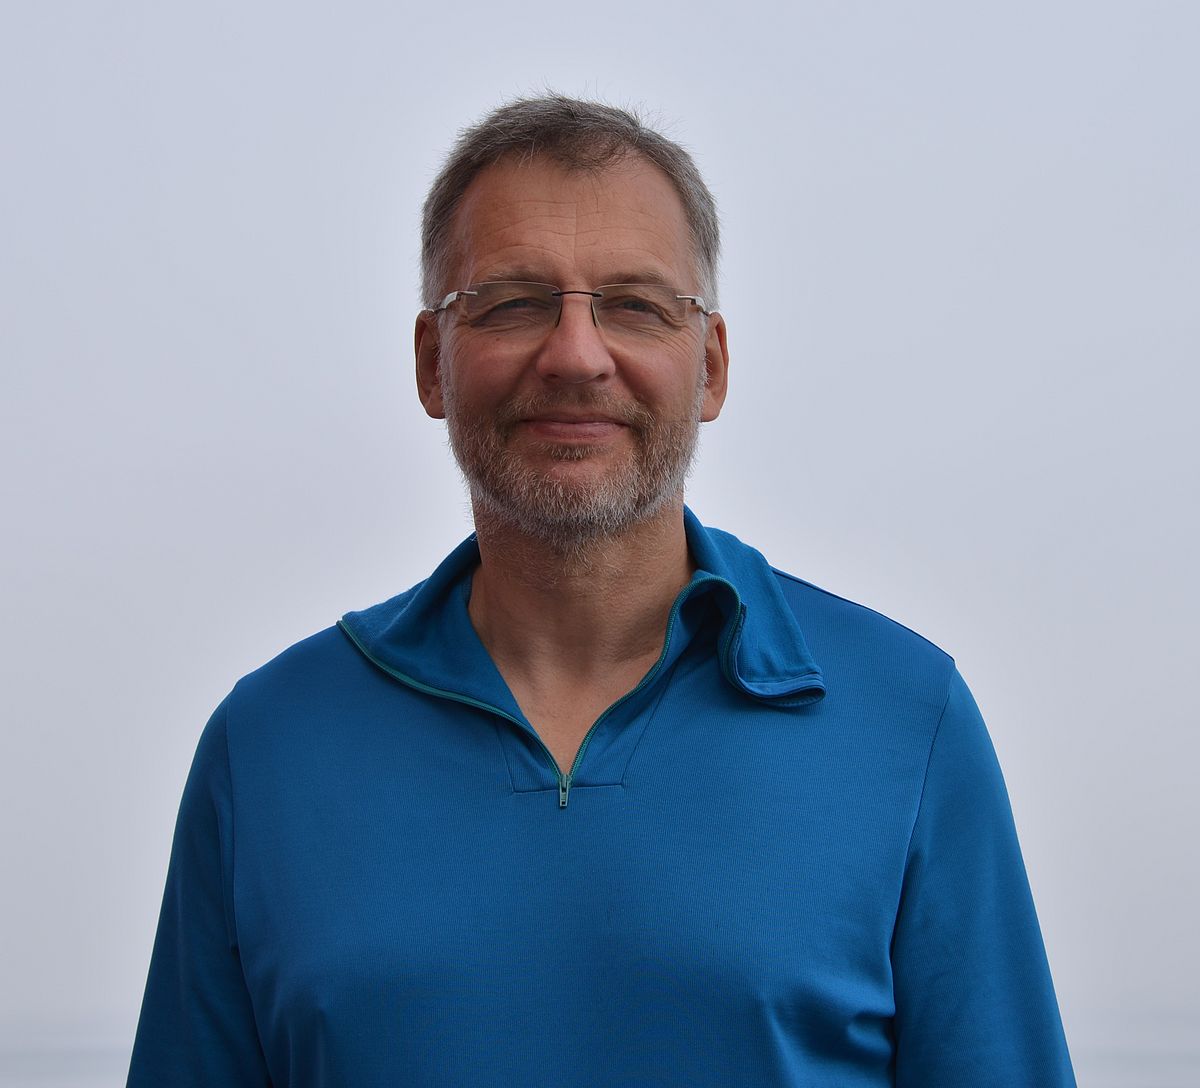 Dr. Mark Schmidt